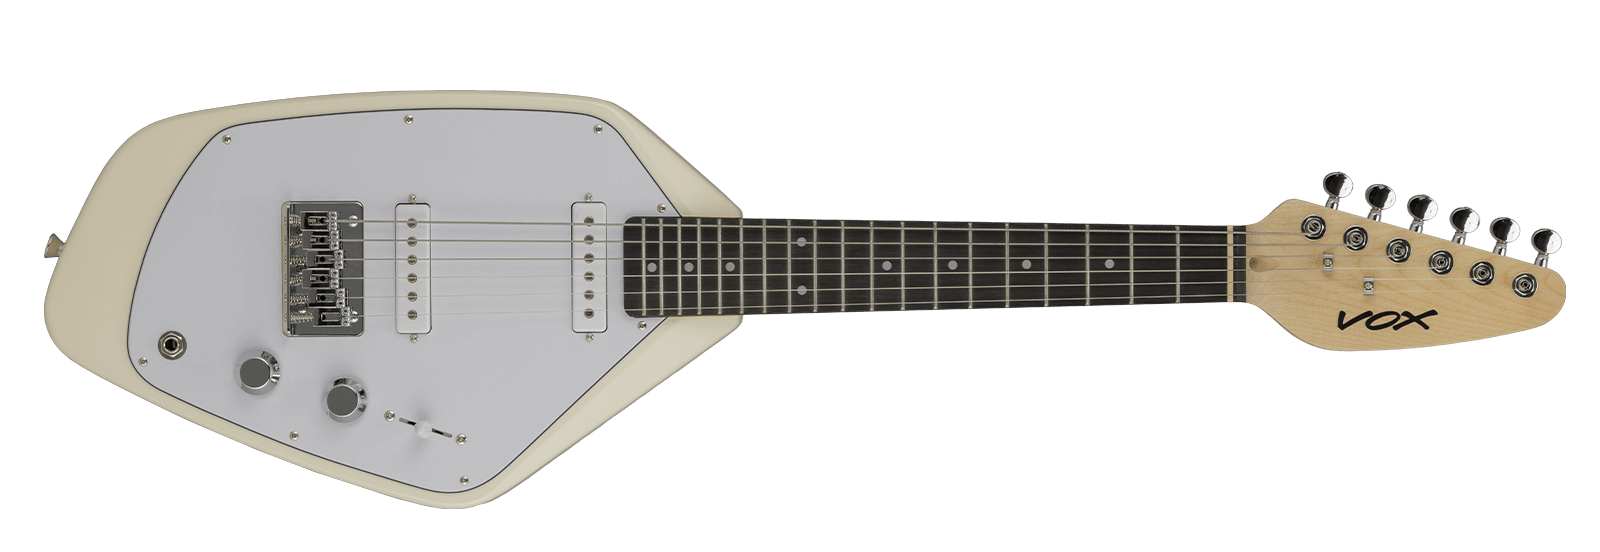 Vox Mark V Mini Guitar white horizontal.